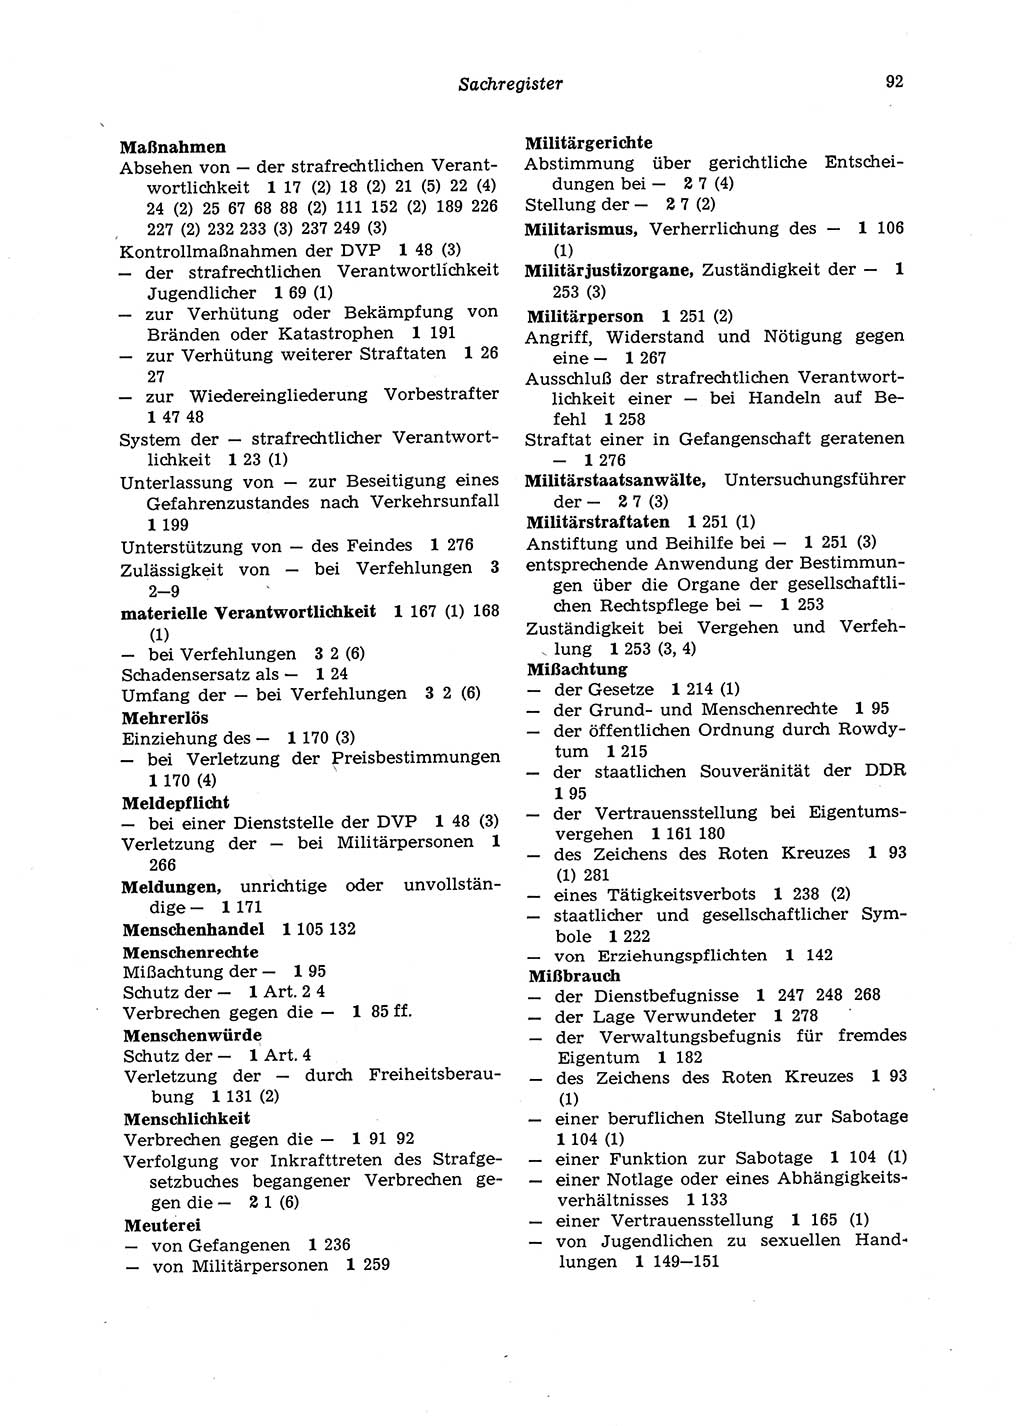 Strafgesetzbuch (StGB) der Deutschen Demokratischen Republik (DDR) 1987, Seite 92 (StGB DDR 1987, S. 92)